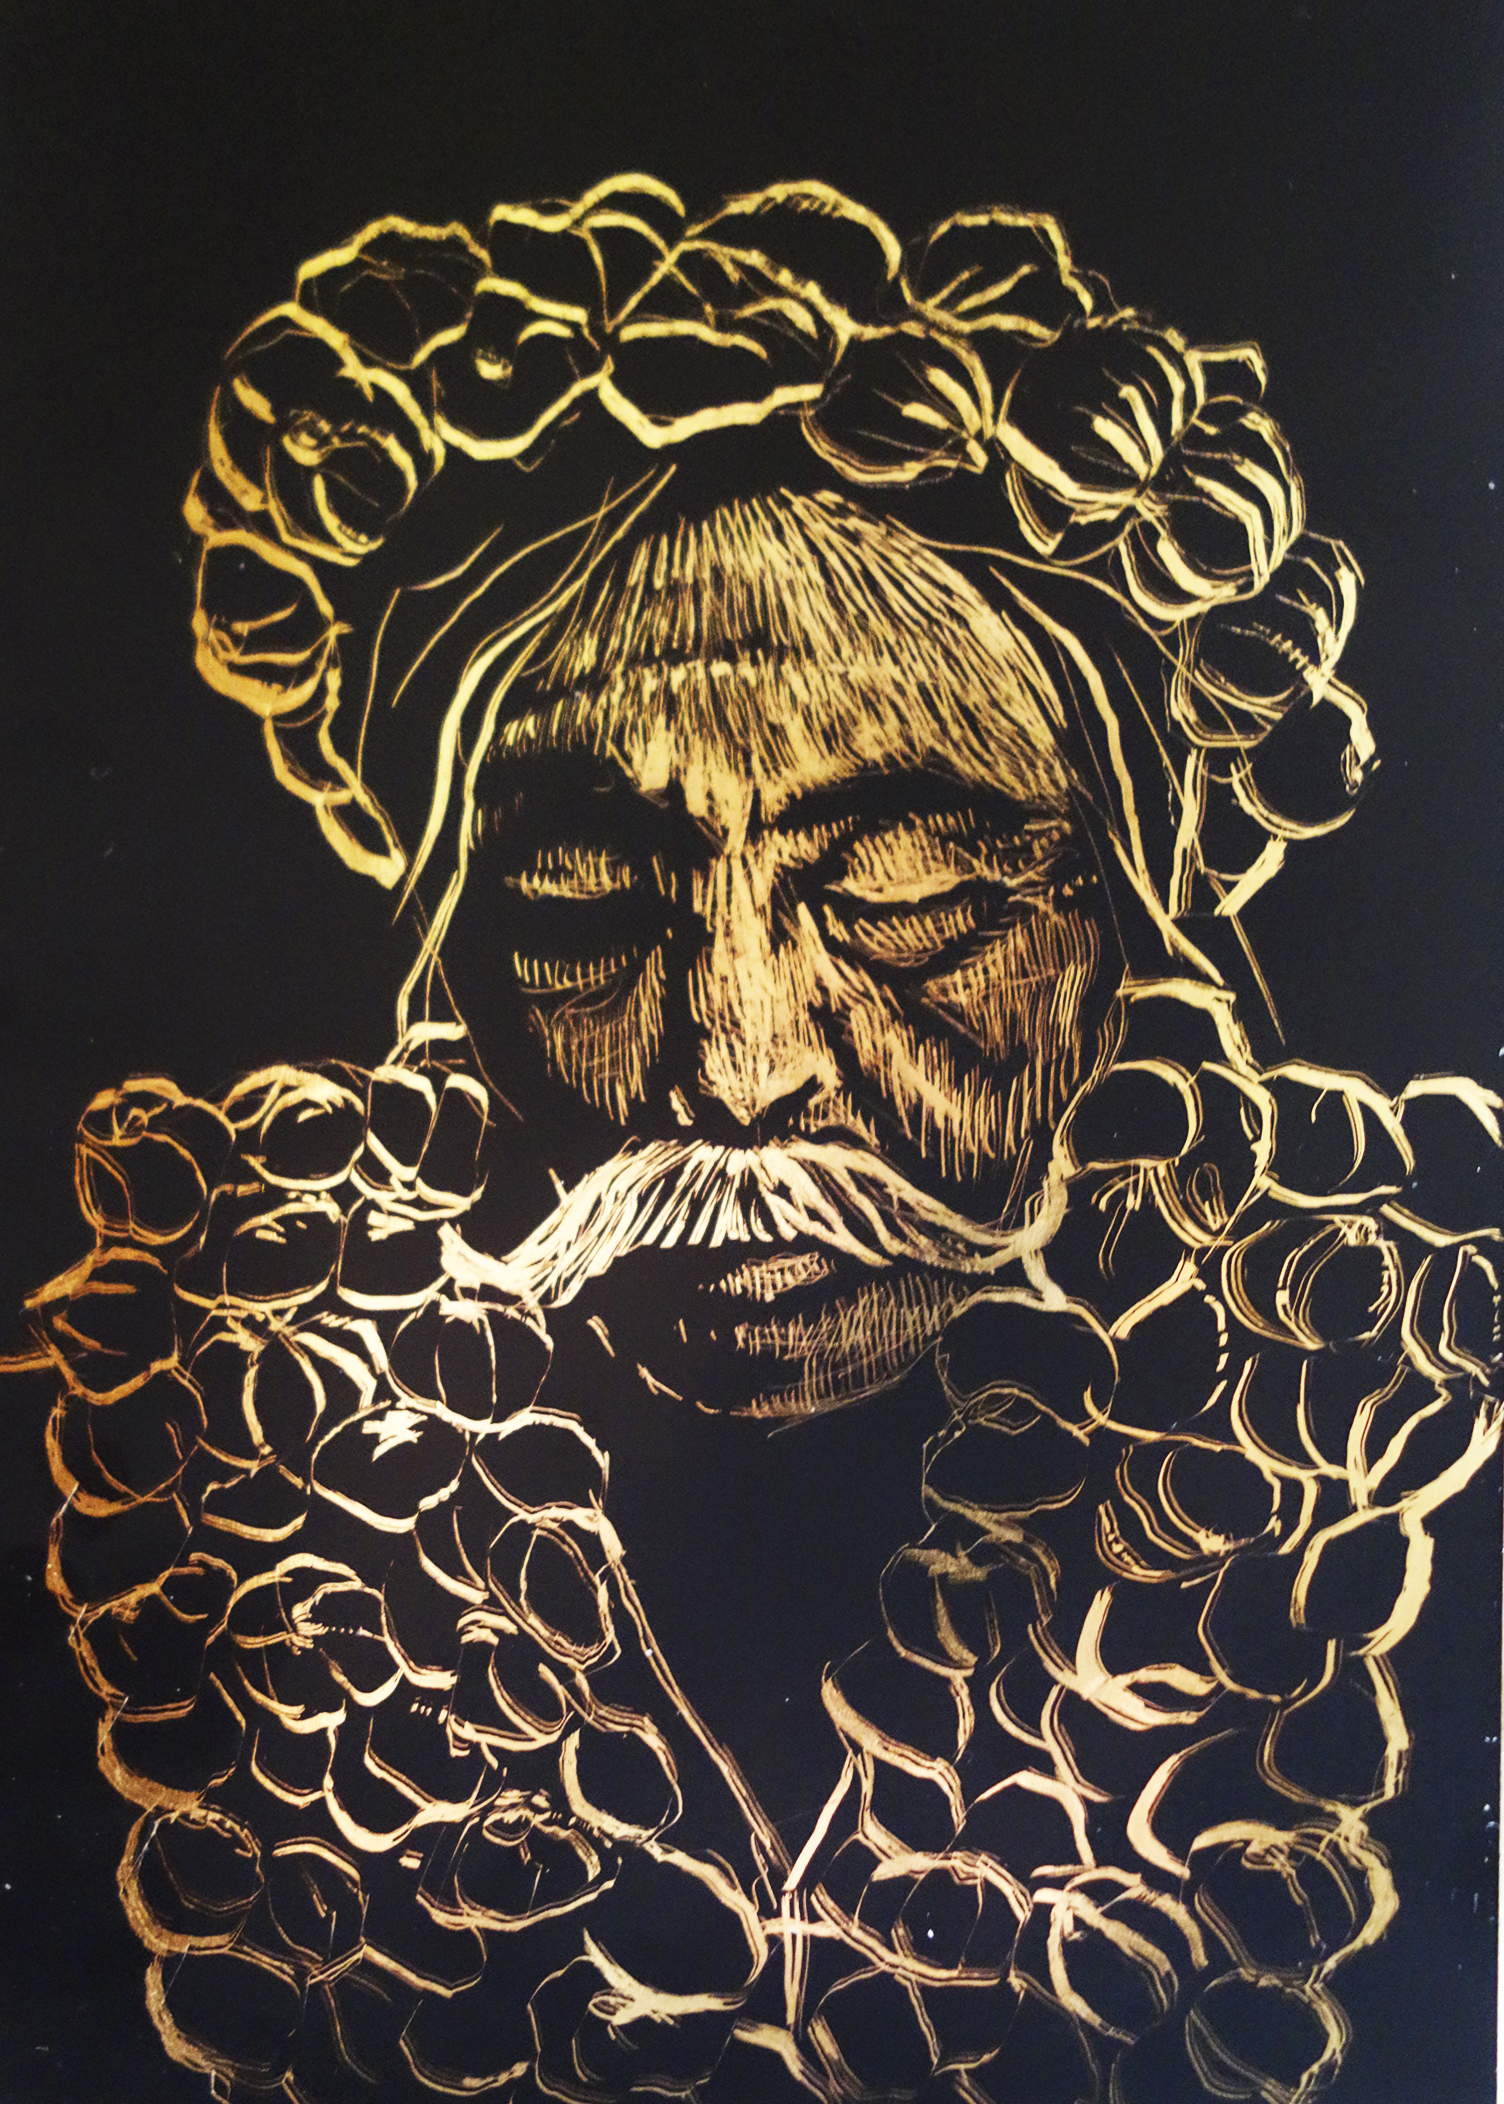 Graphic on golden scraperboard, 10x15cm, 2014